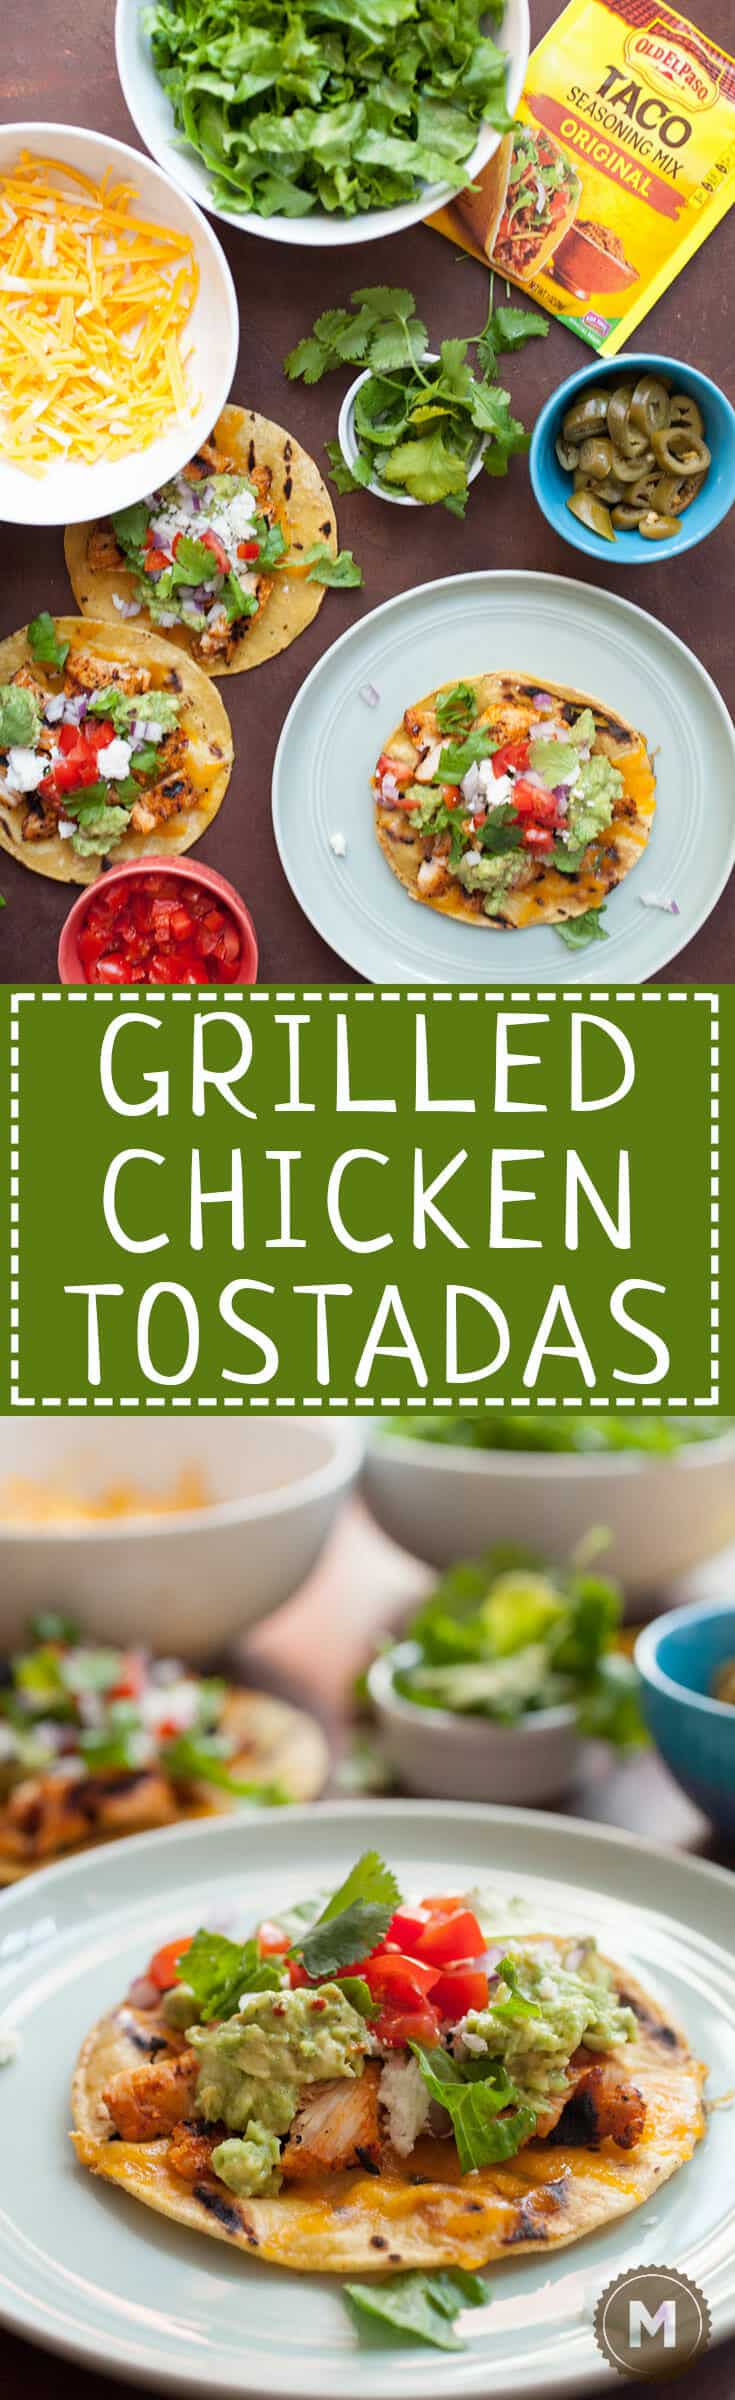 Easy Grilled Chicken Tostadas